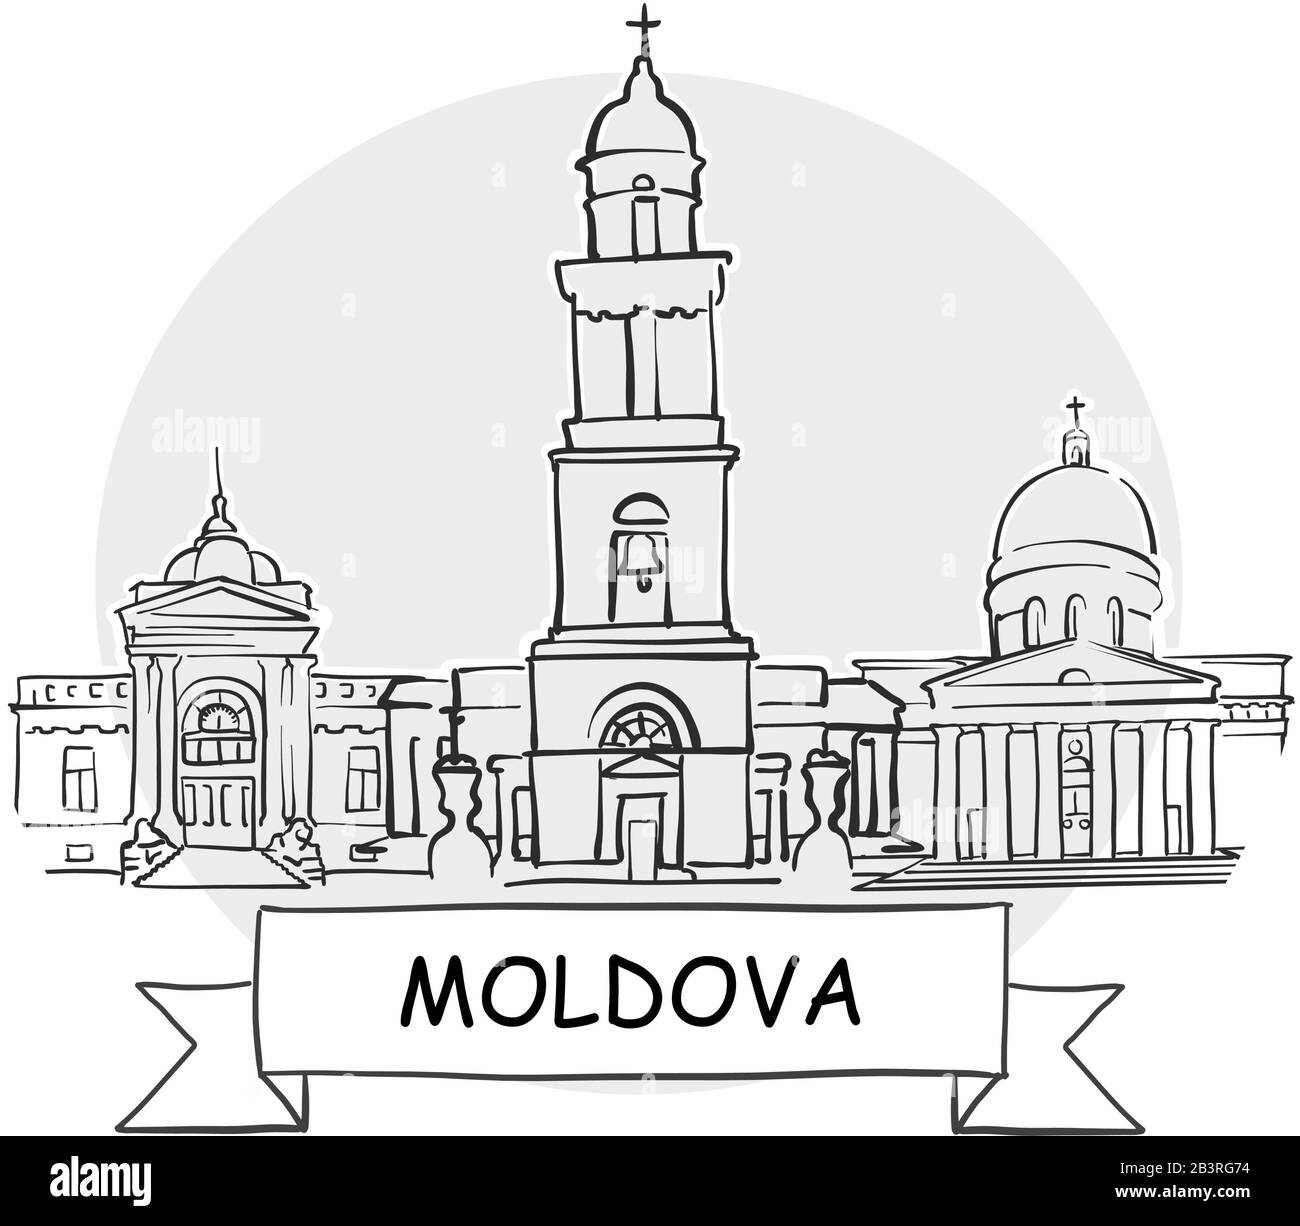 Moldova Señal De Vector Urbano Dibujado A Mano. Ilustración De Línea Negra Con Cinta Y Título. Ilustración del Vector